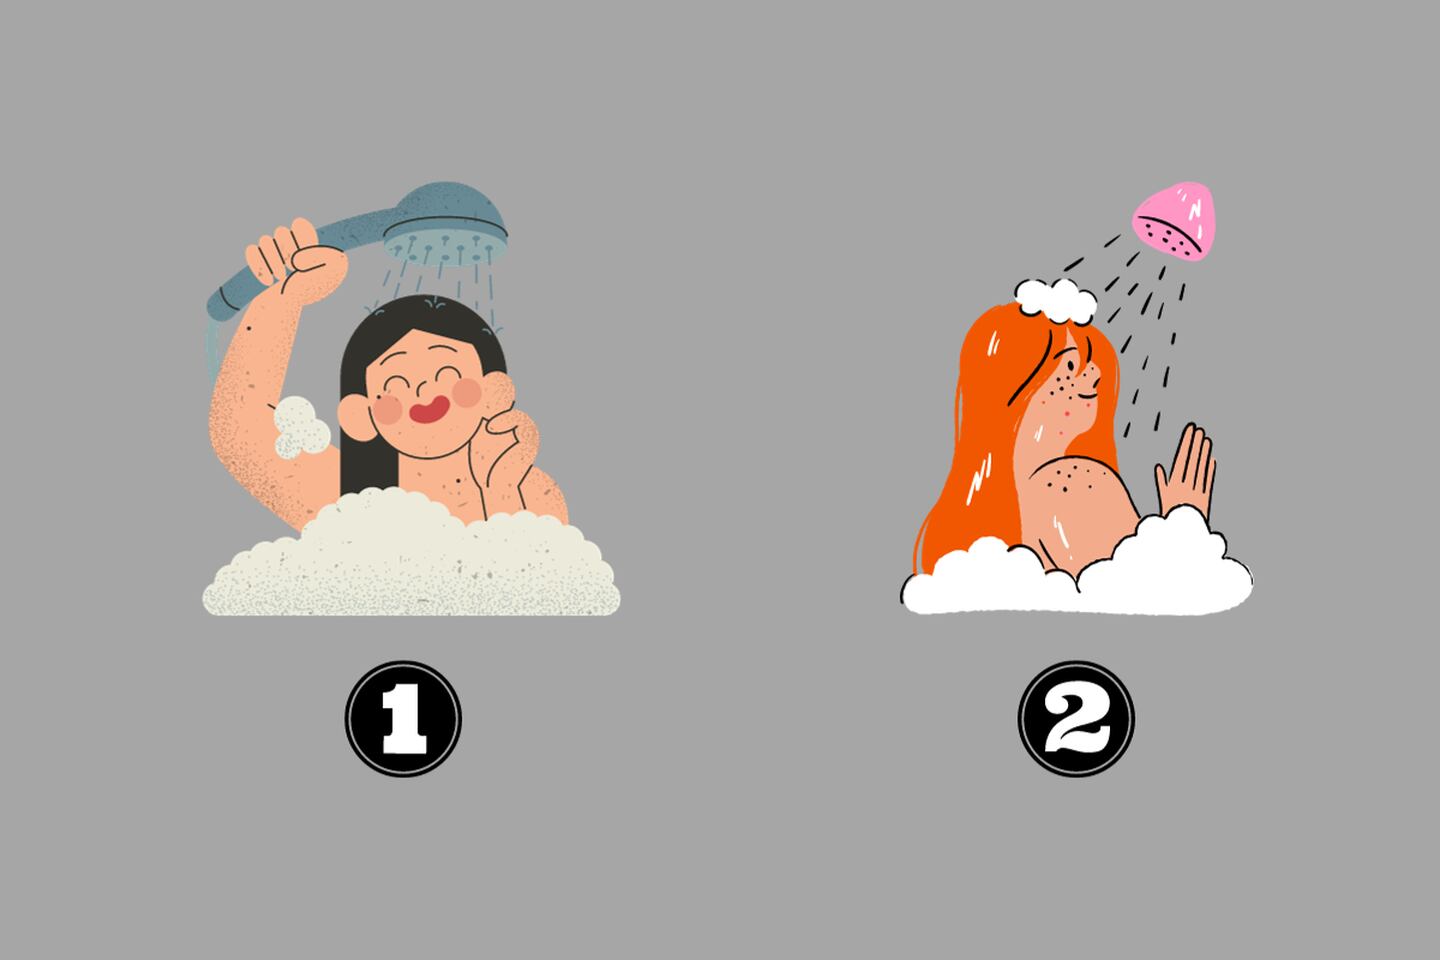 En este test de personalidad hay dos ilustraciones de mujeres que se duchan.